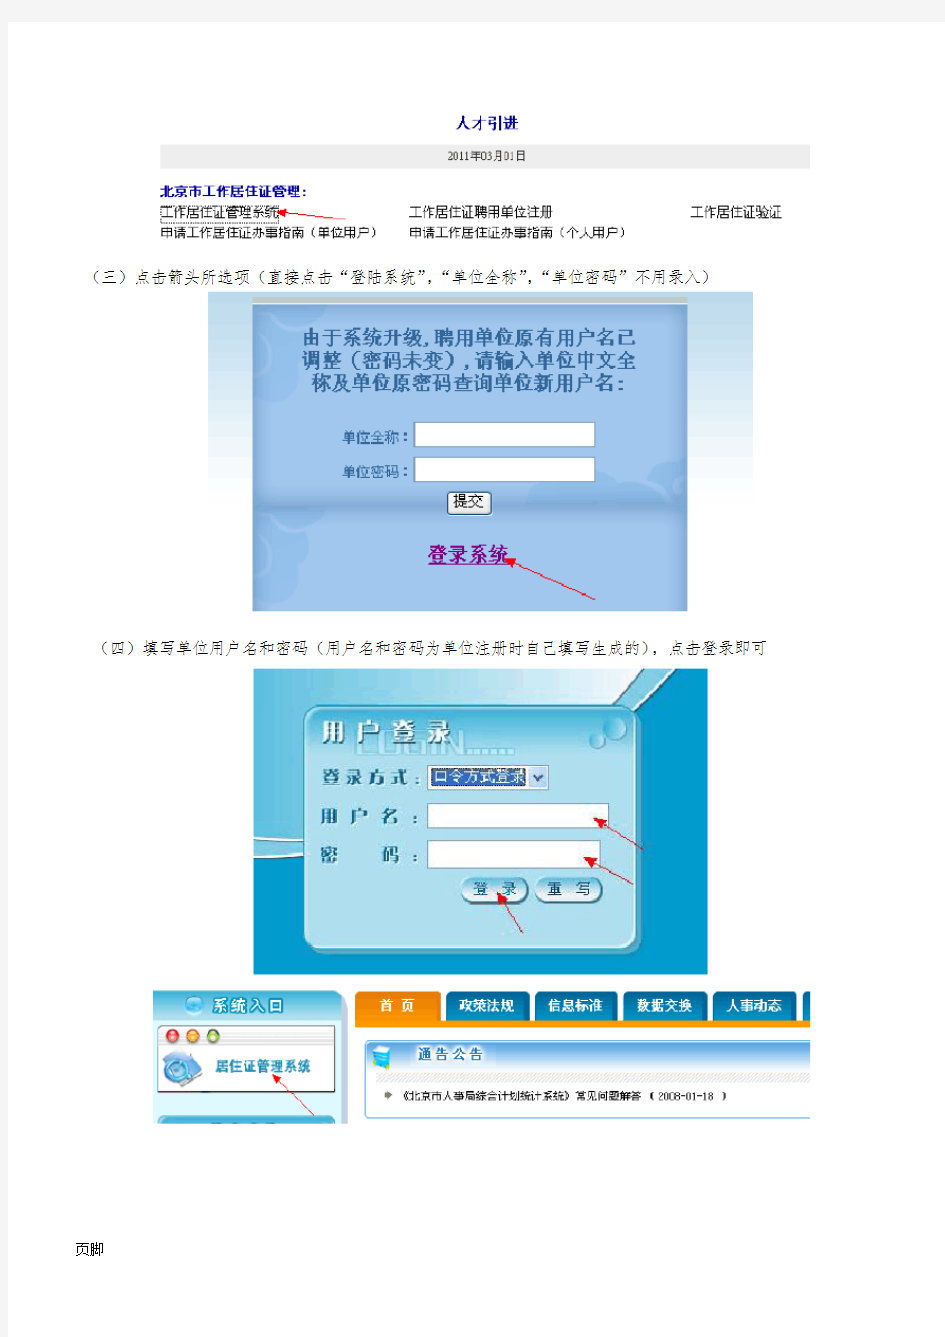 北京市工作居住证系统操作流程图